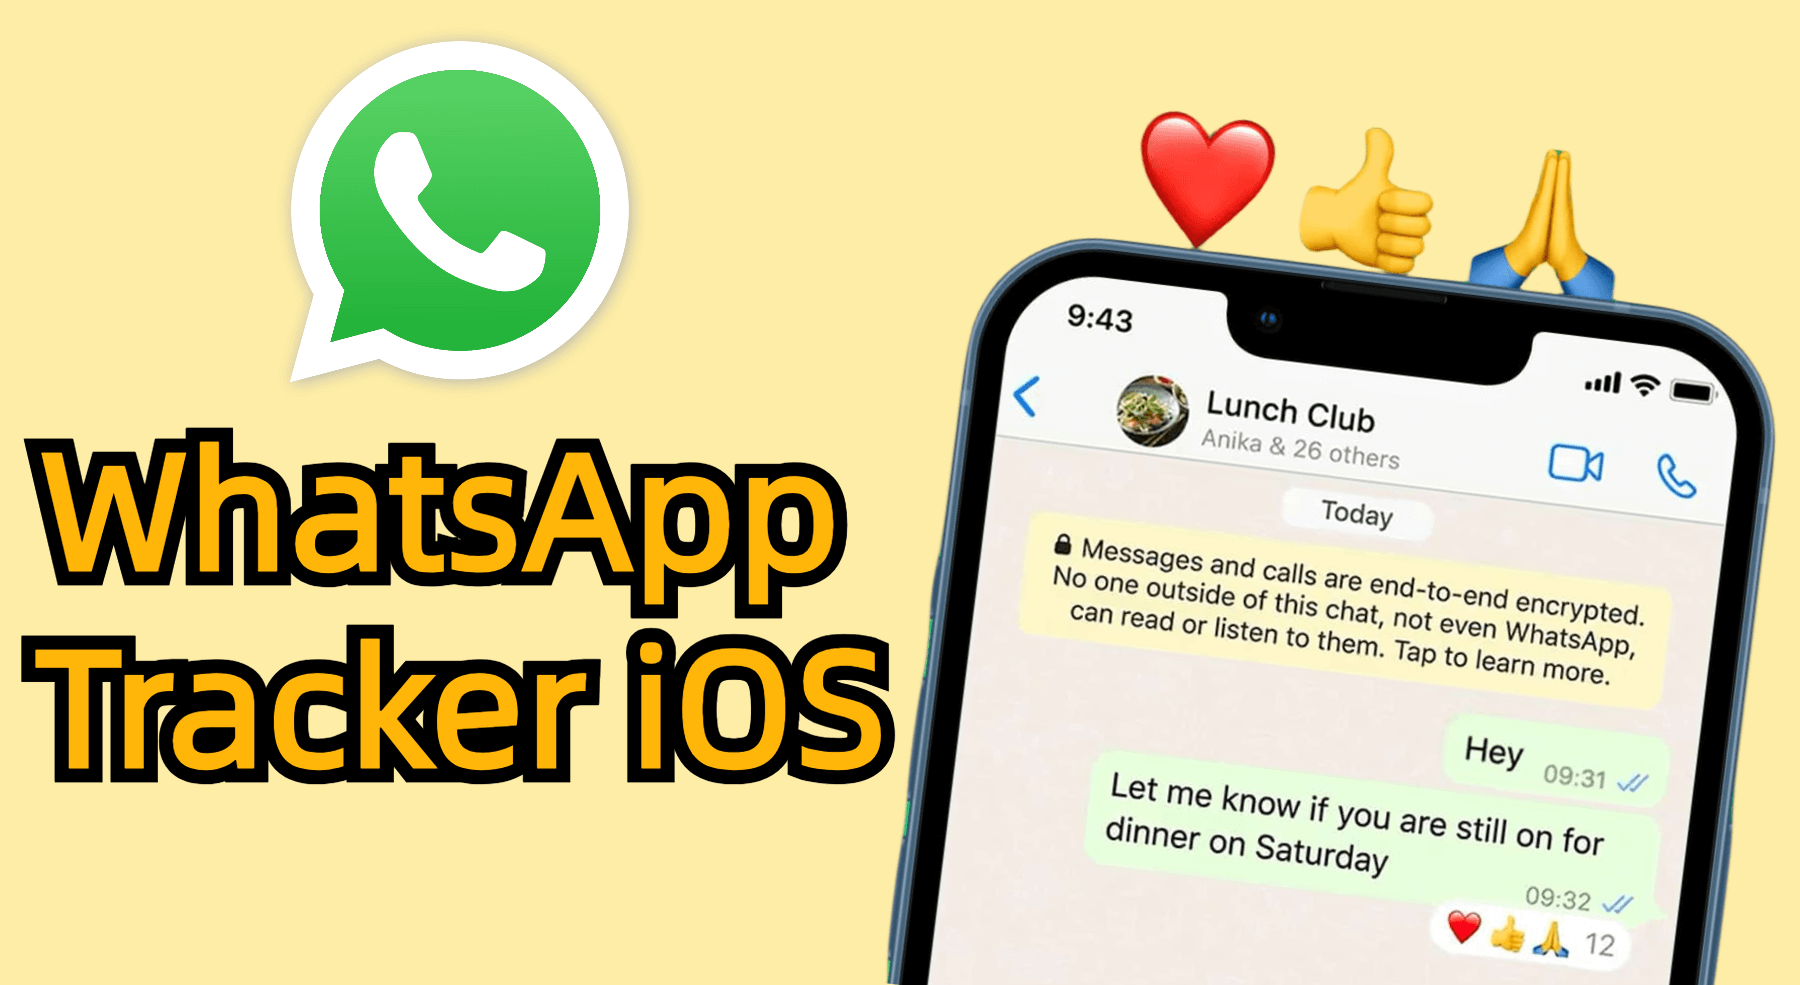 WhatsApp tracker ios